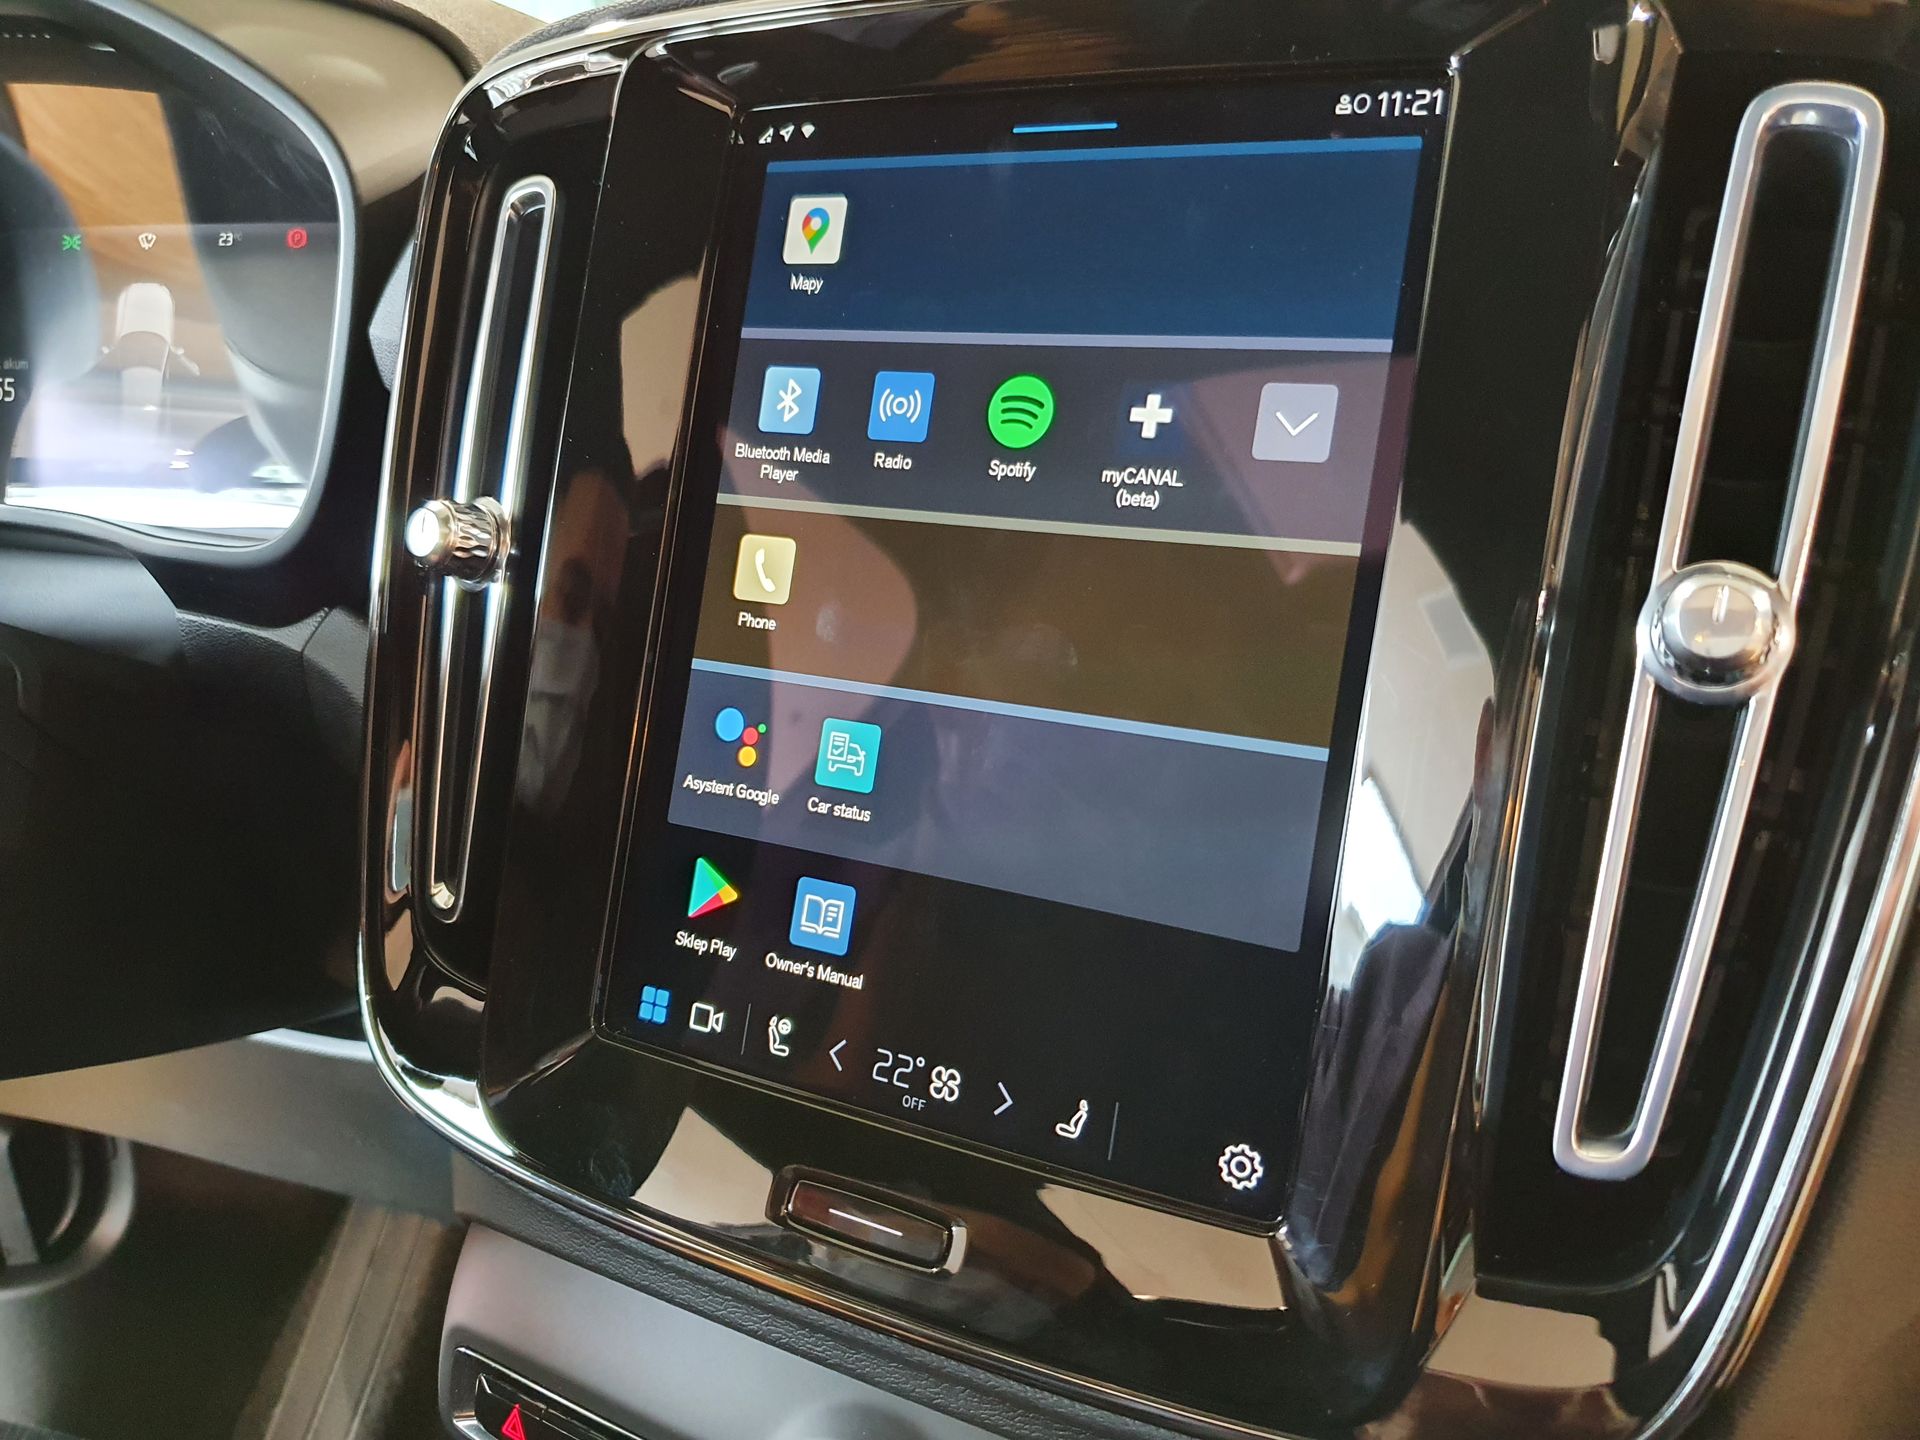 Nowe Volvo Jak Telefony Komórkowe. Sprawdziłem Multimedia Oparte Na Androidzie | Autokult.pl